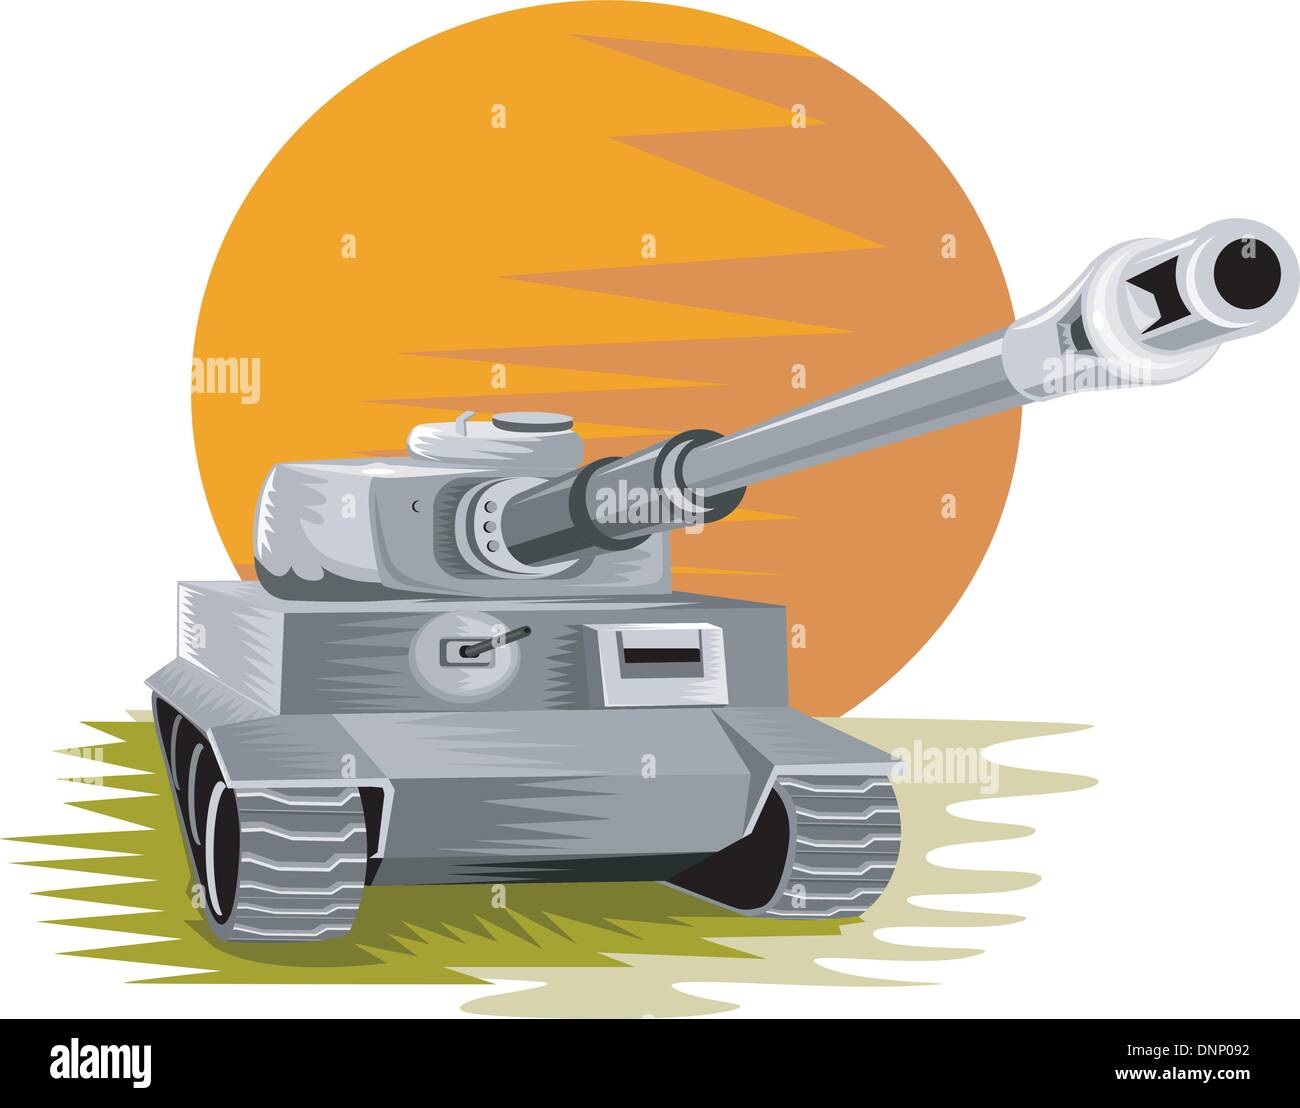 Illustration d'une seconde guerre mondiale char de combat de panzers allemands fait en style rétro. Illustration de Vecteur